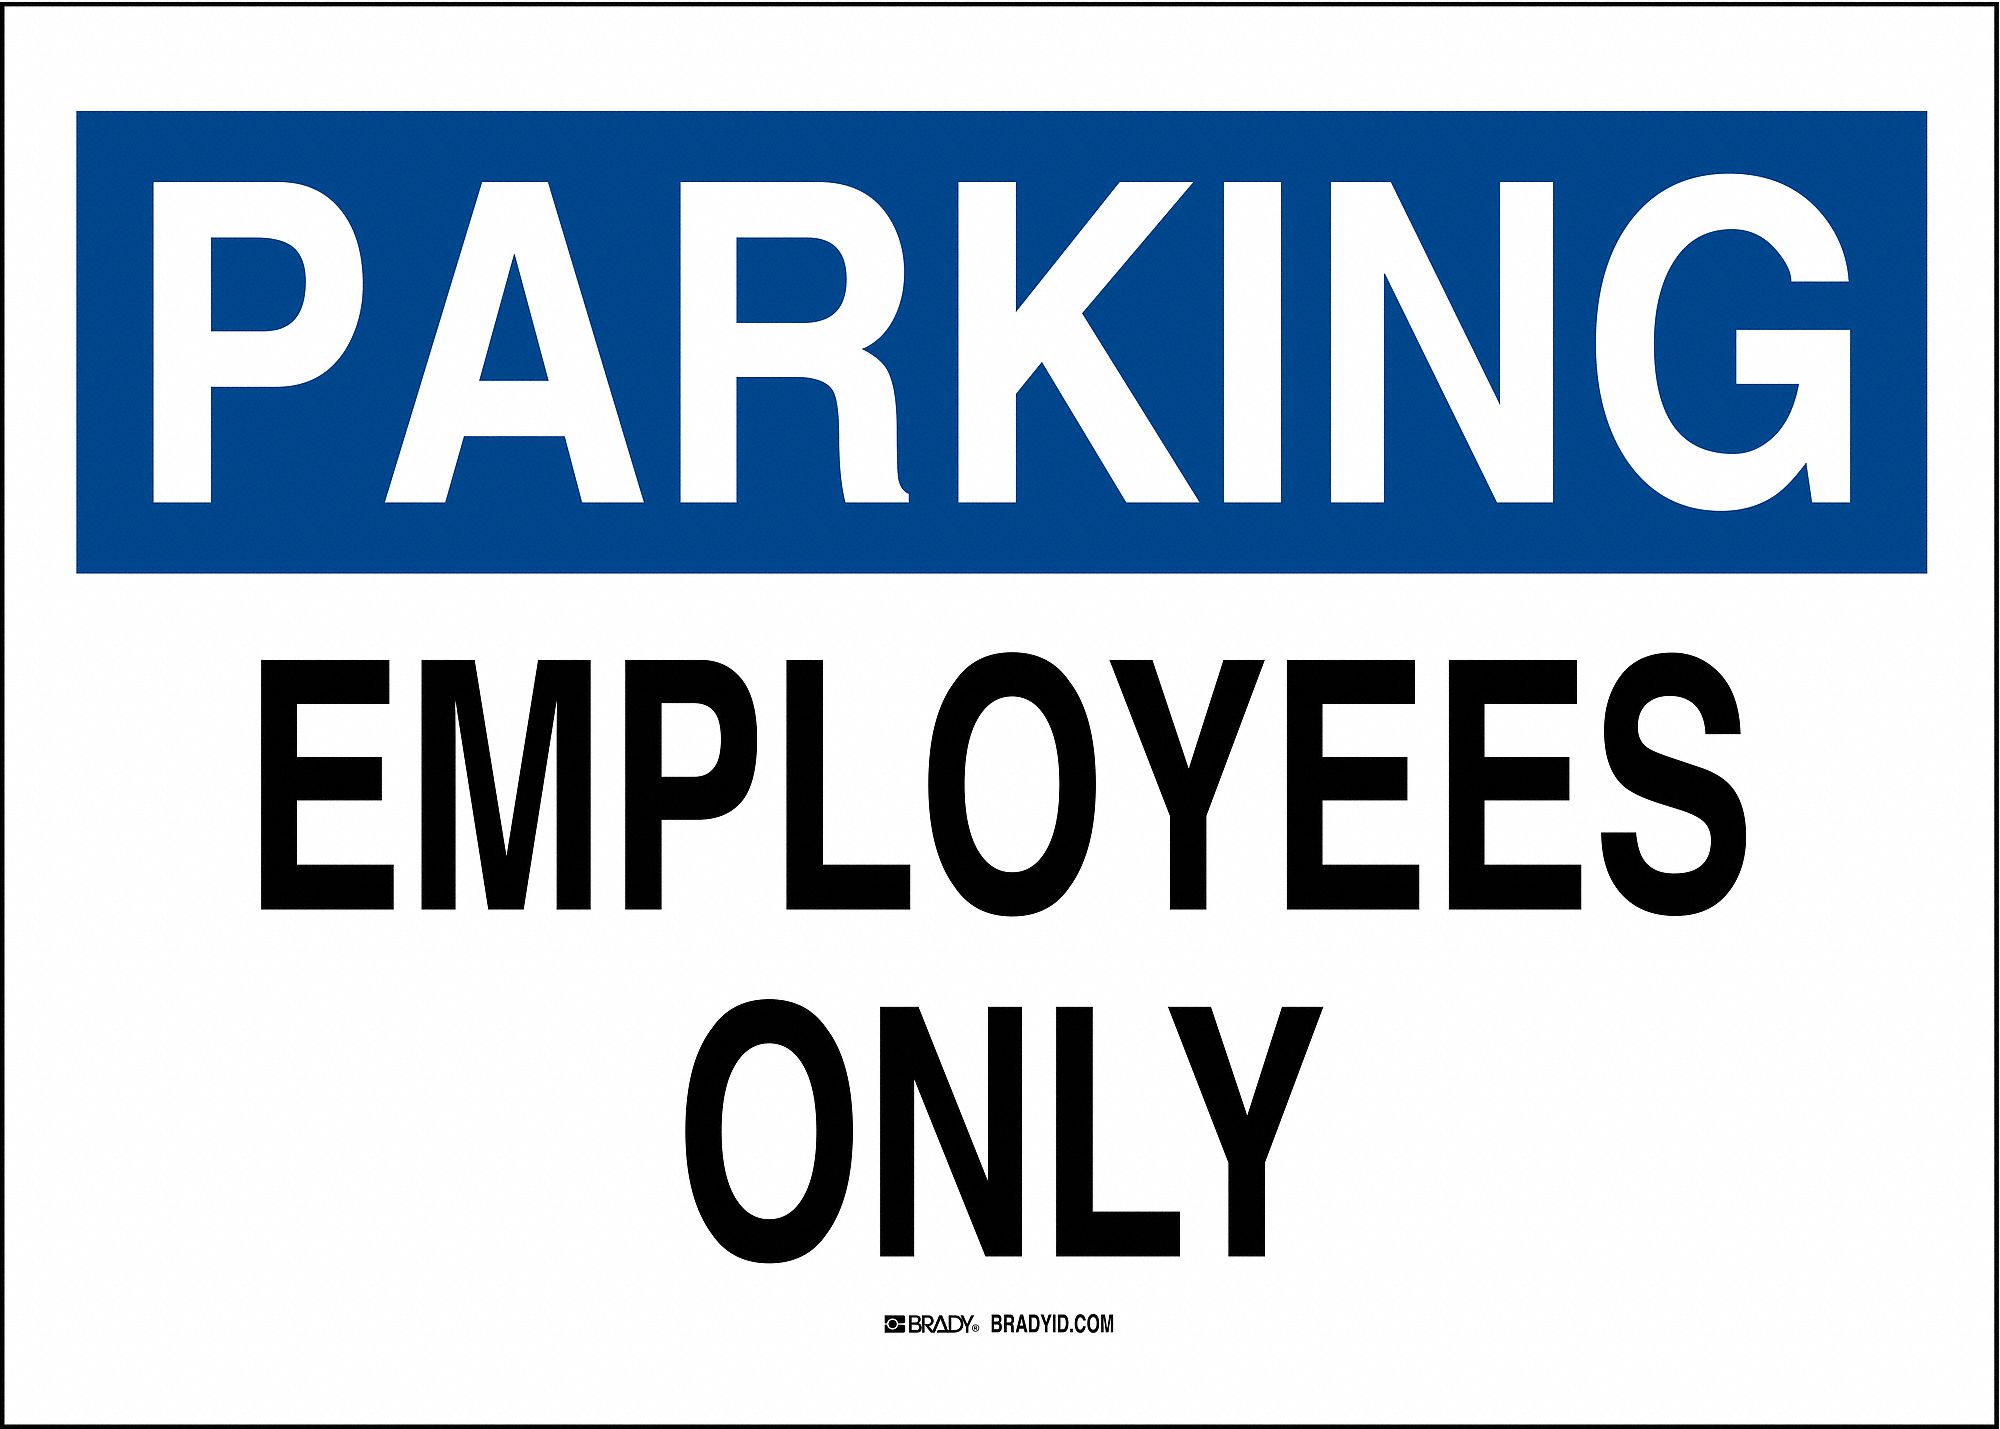 TextParking Employees Only B-120 Premium Fiberglass, Parking Sign Height 14